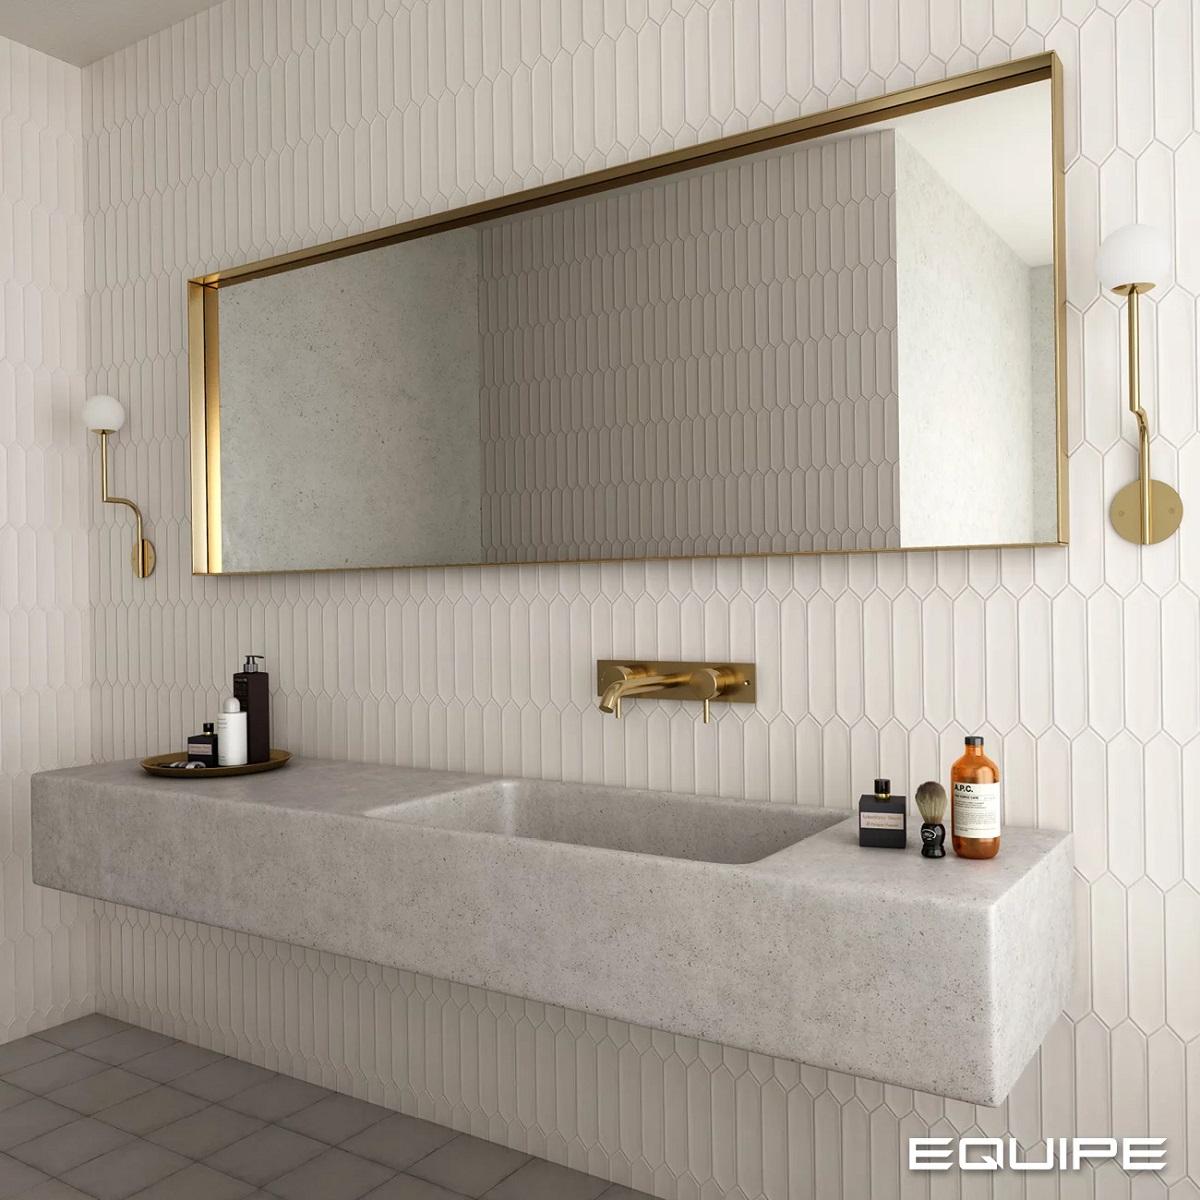 Carrelage uni blanc 5X25 dans une salle de bain dominante blanche avec vasque en pierre et accessoires dorés sur le mur